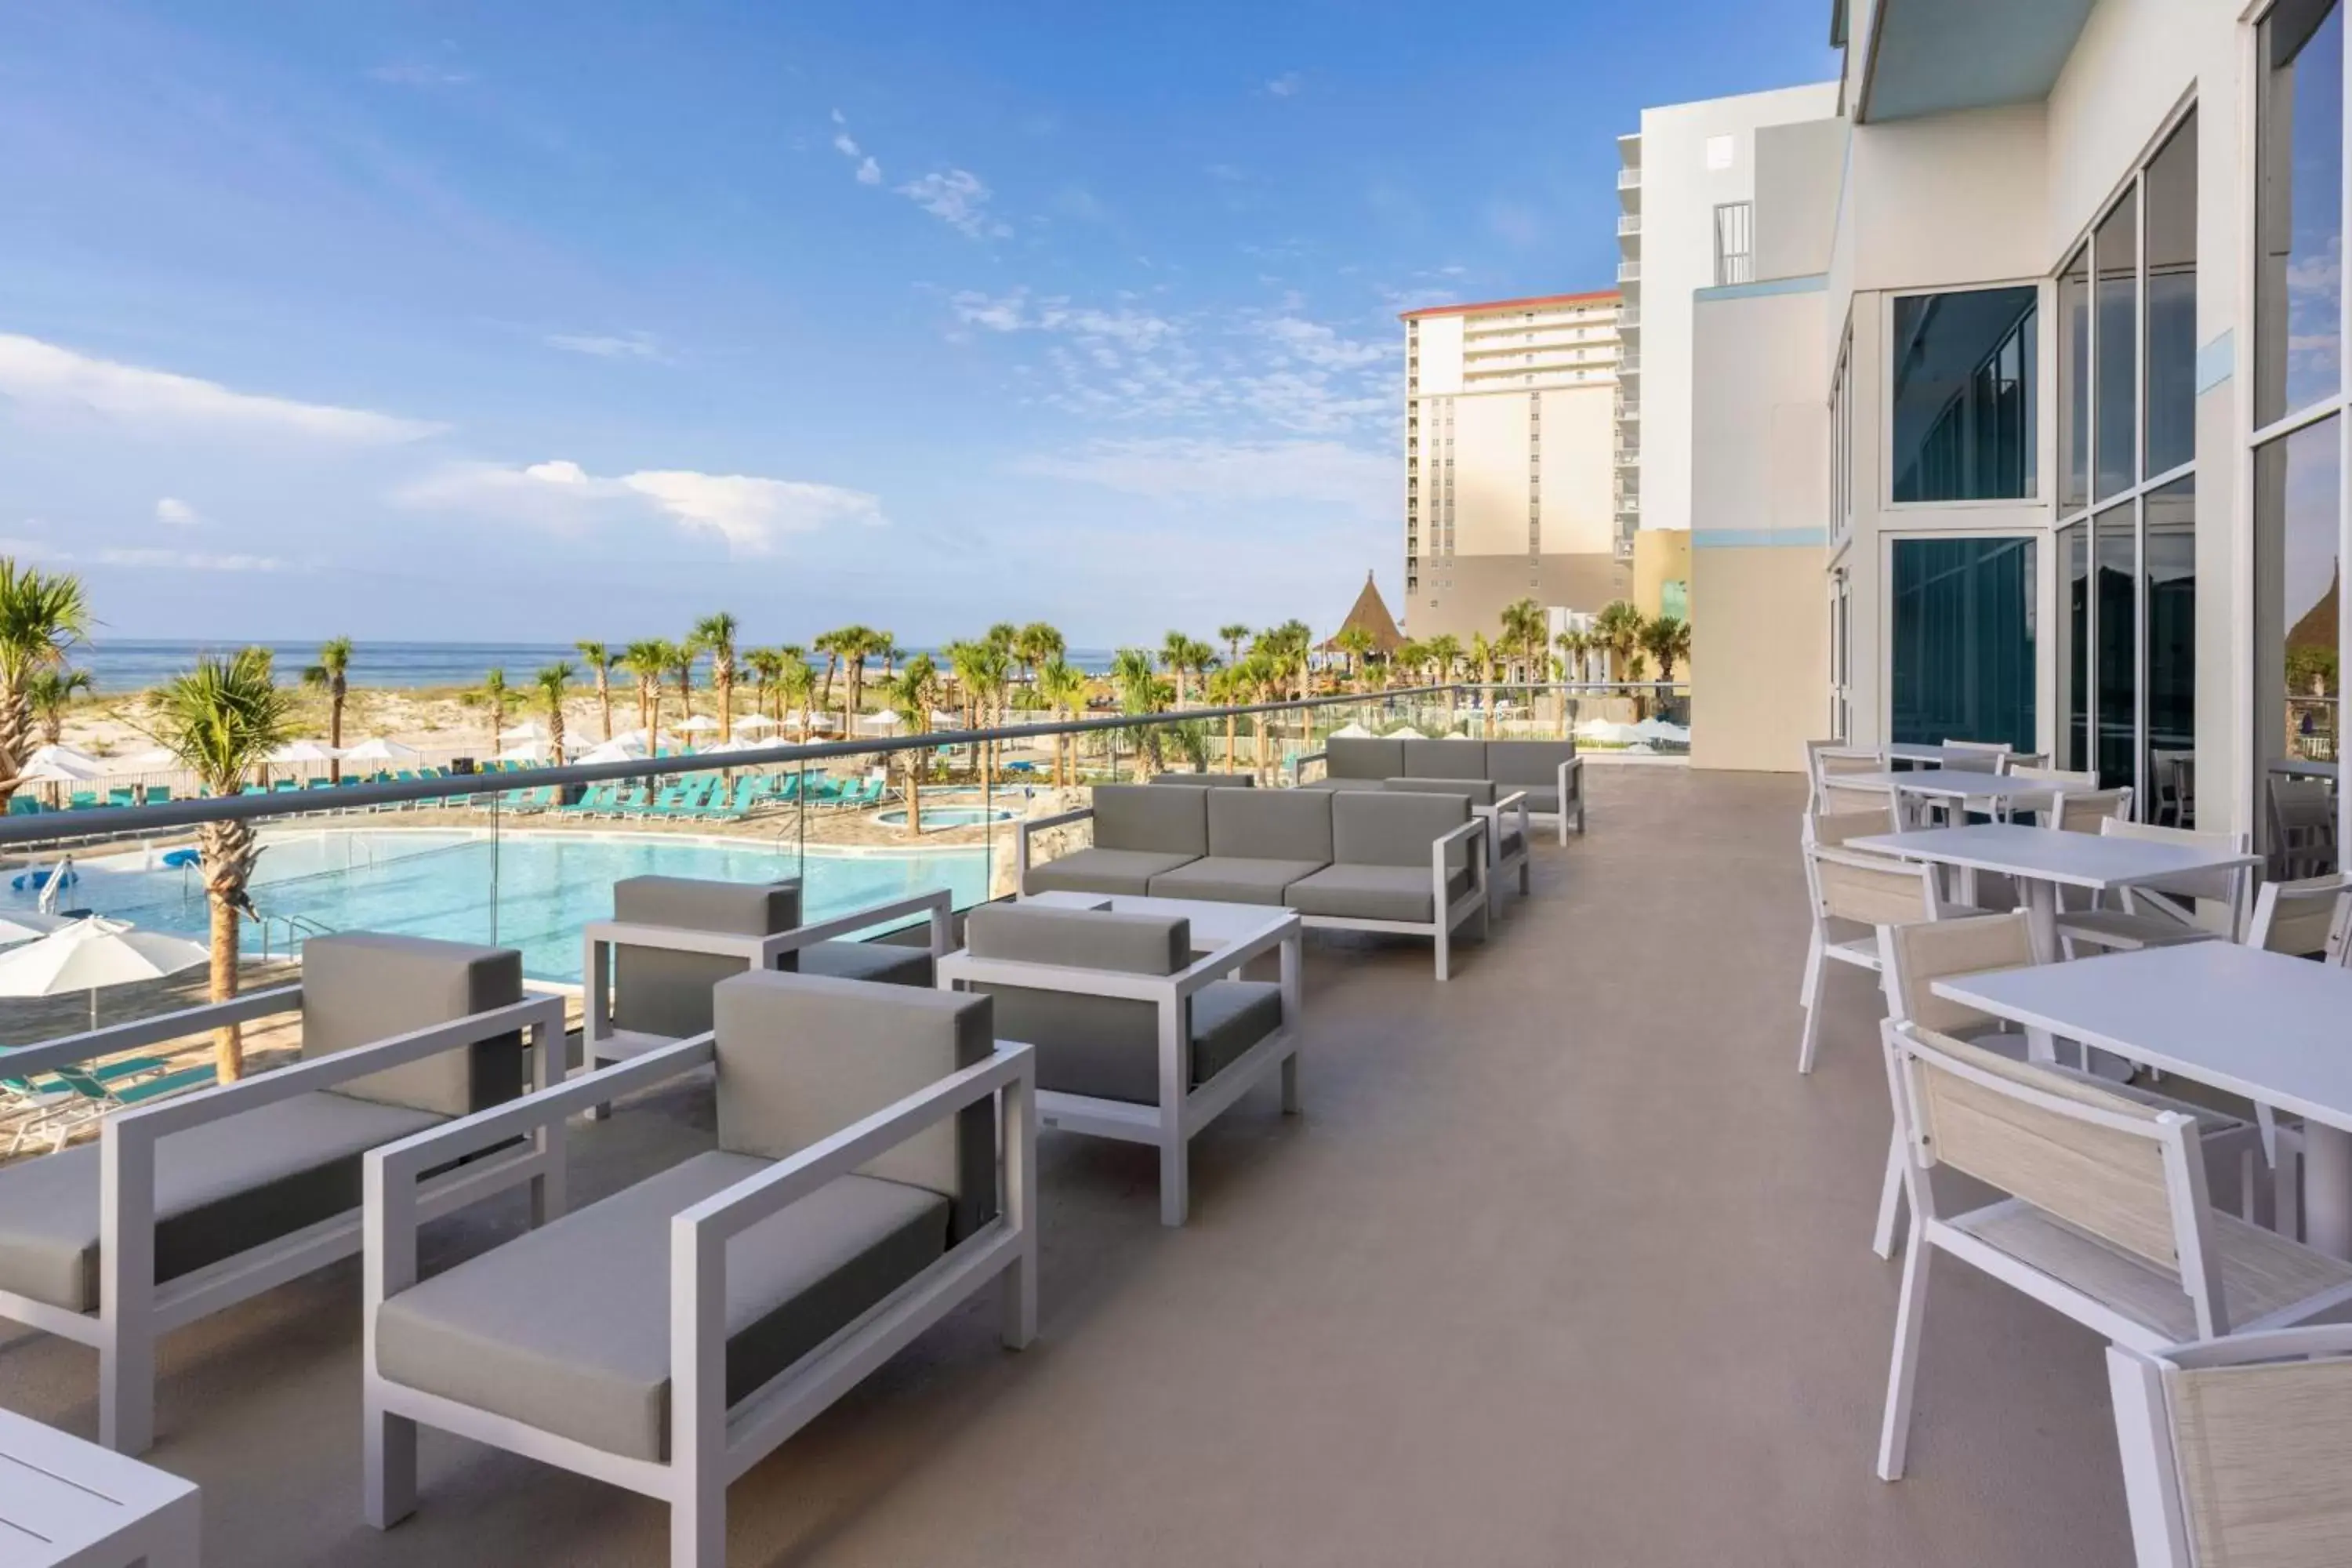 Lobby or reception, Balcony/Terrace in Fairfield by Marriott Inn & Suites Pensacola Beach